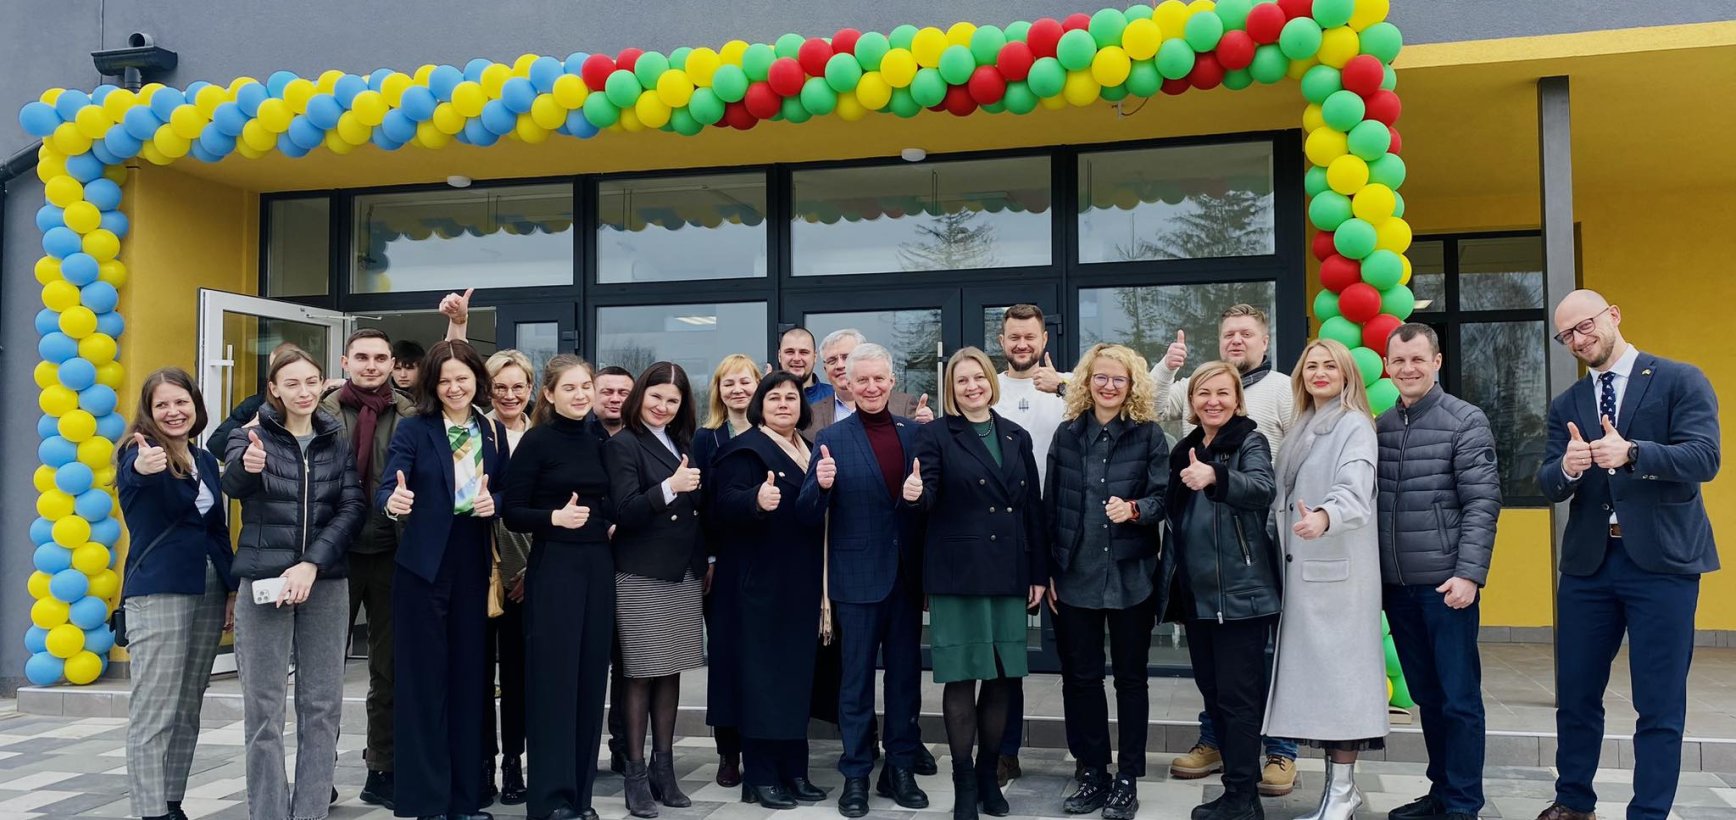 Lietuva atstatė karo nuniokotą mokyklą Borodyankoje: į klases sugrįžta 700 moksleivių